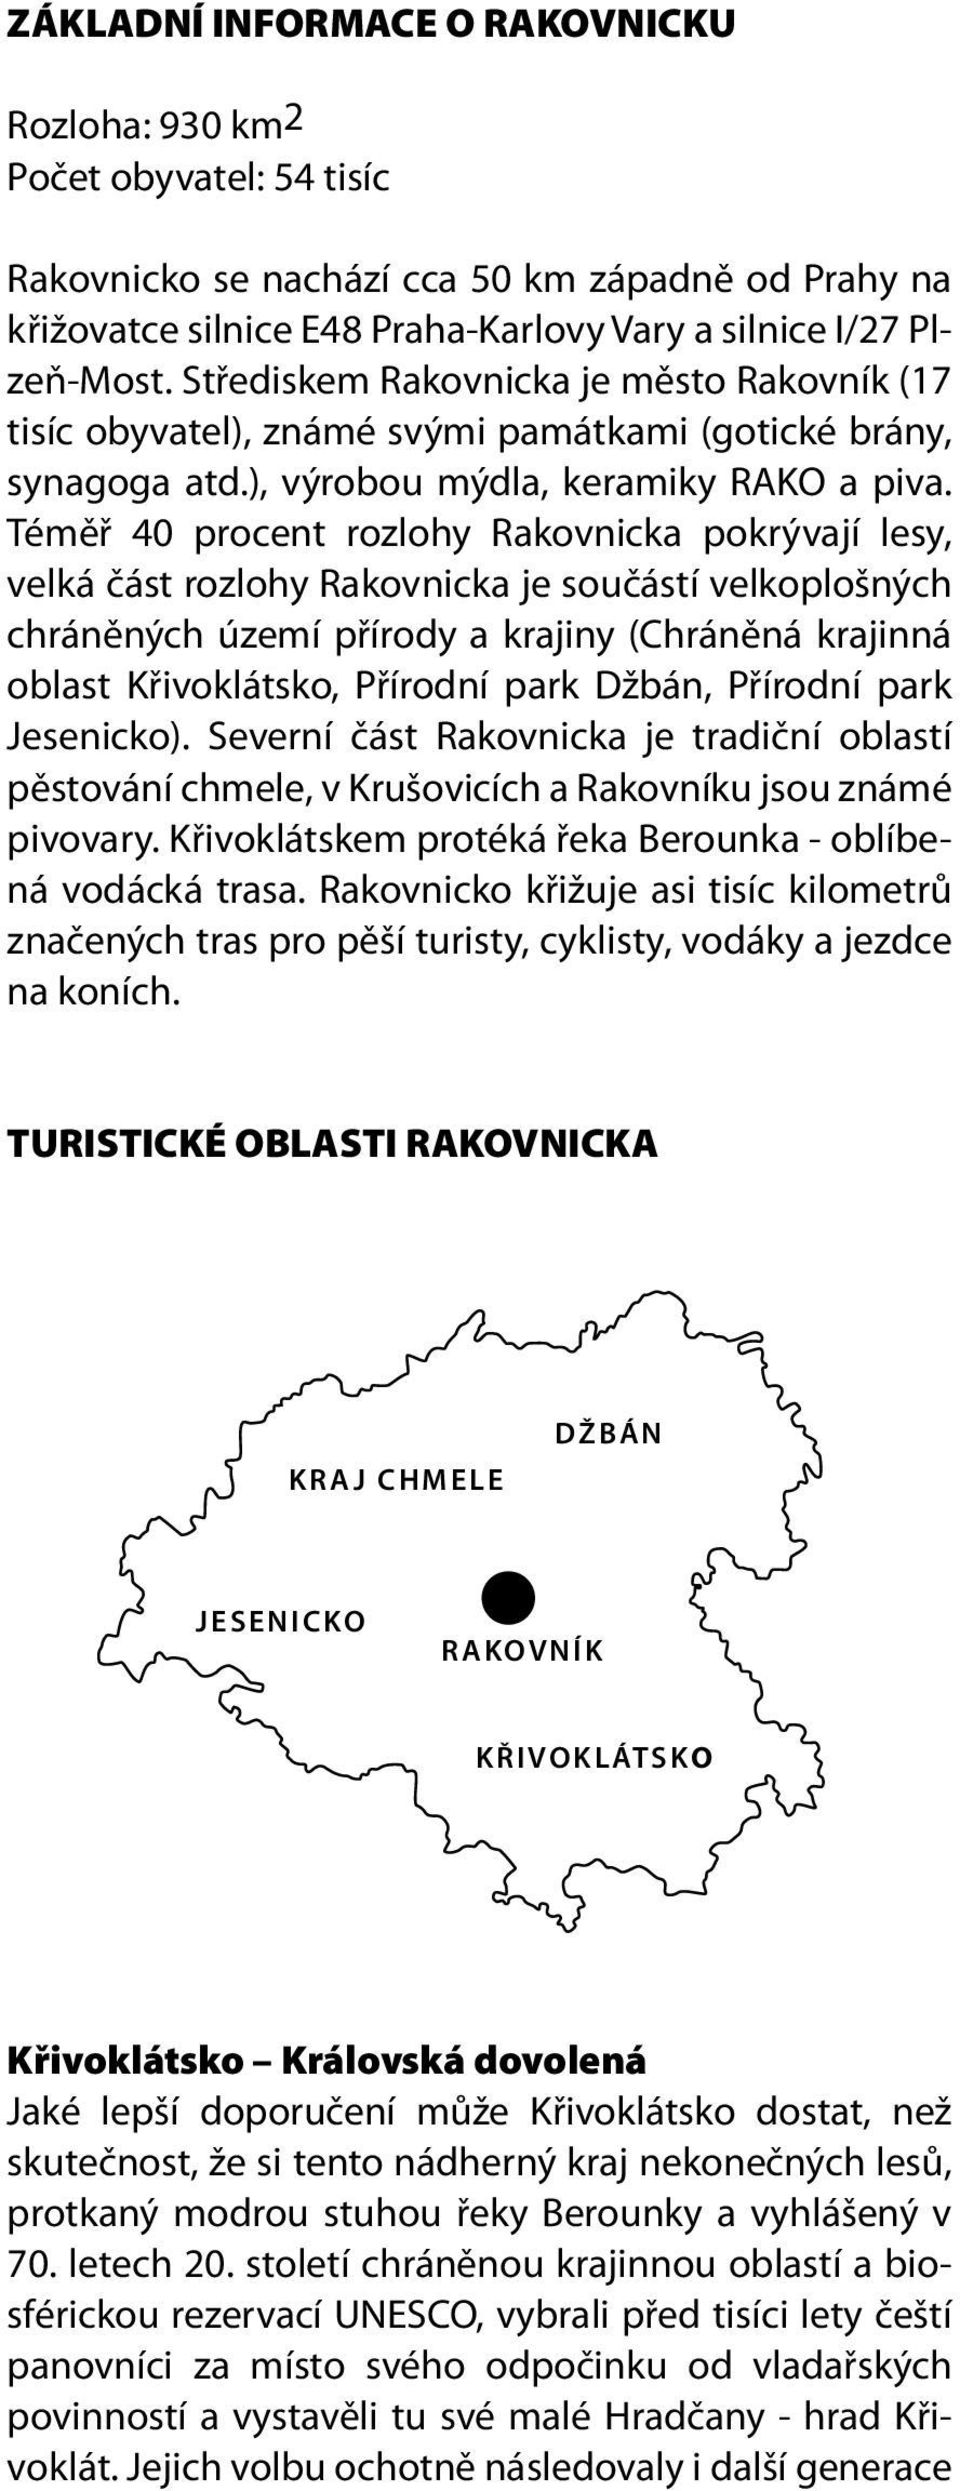 Téměř 40 procent rozlohy Rakovnicka pokrývají lesy, velká část rozlohy Rakovnicka je součástí velkoplošných chráněných území přírody a krajiny (Chráněná krajinná oblast Křivoklátsko, Přírodní park